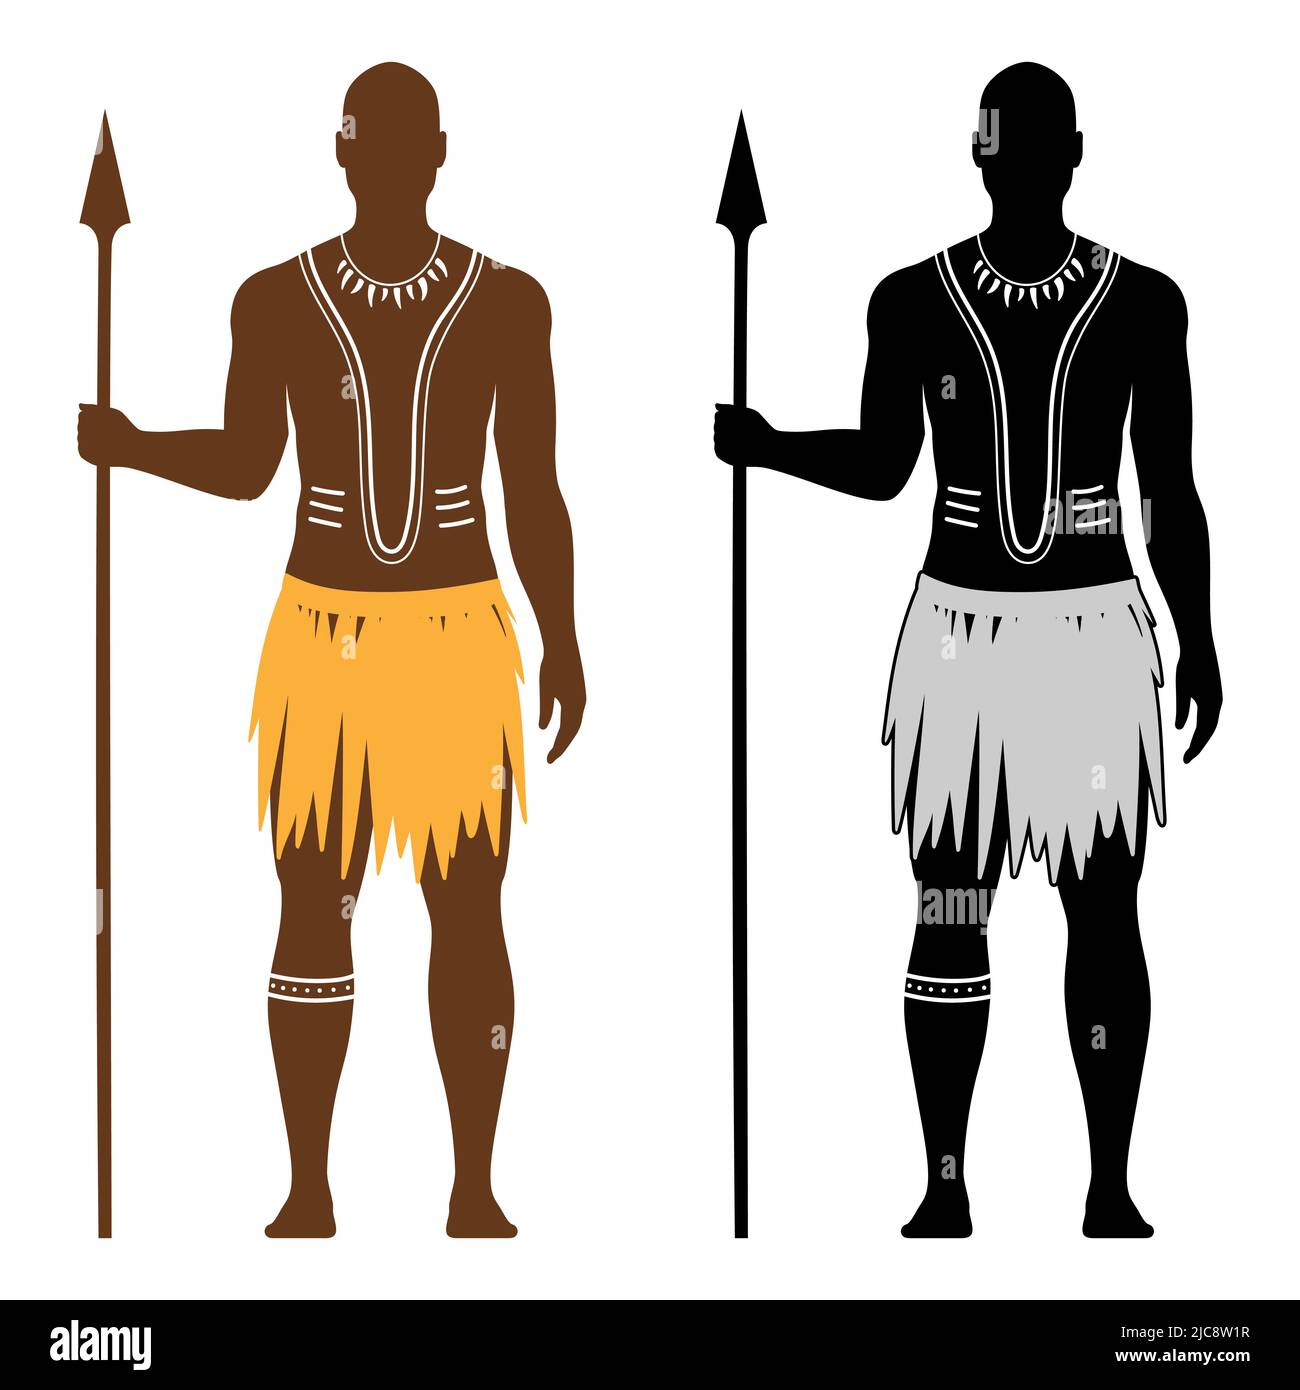 Ensemble vectoriel d'homme guerrier aborigin noir africain avec art du corps traditionnel, tenant une lance, et vêtu d'une robe ethnique, isolée sur fond blanc. Illustration de Vecteur